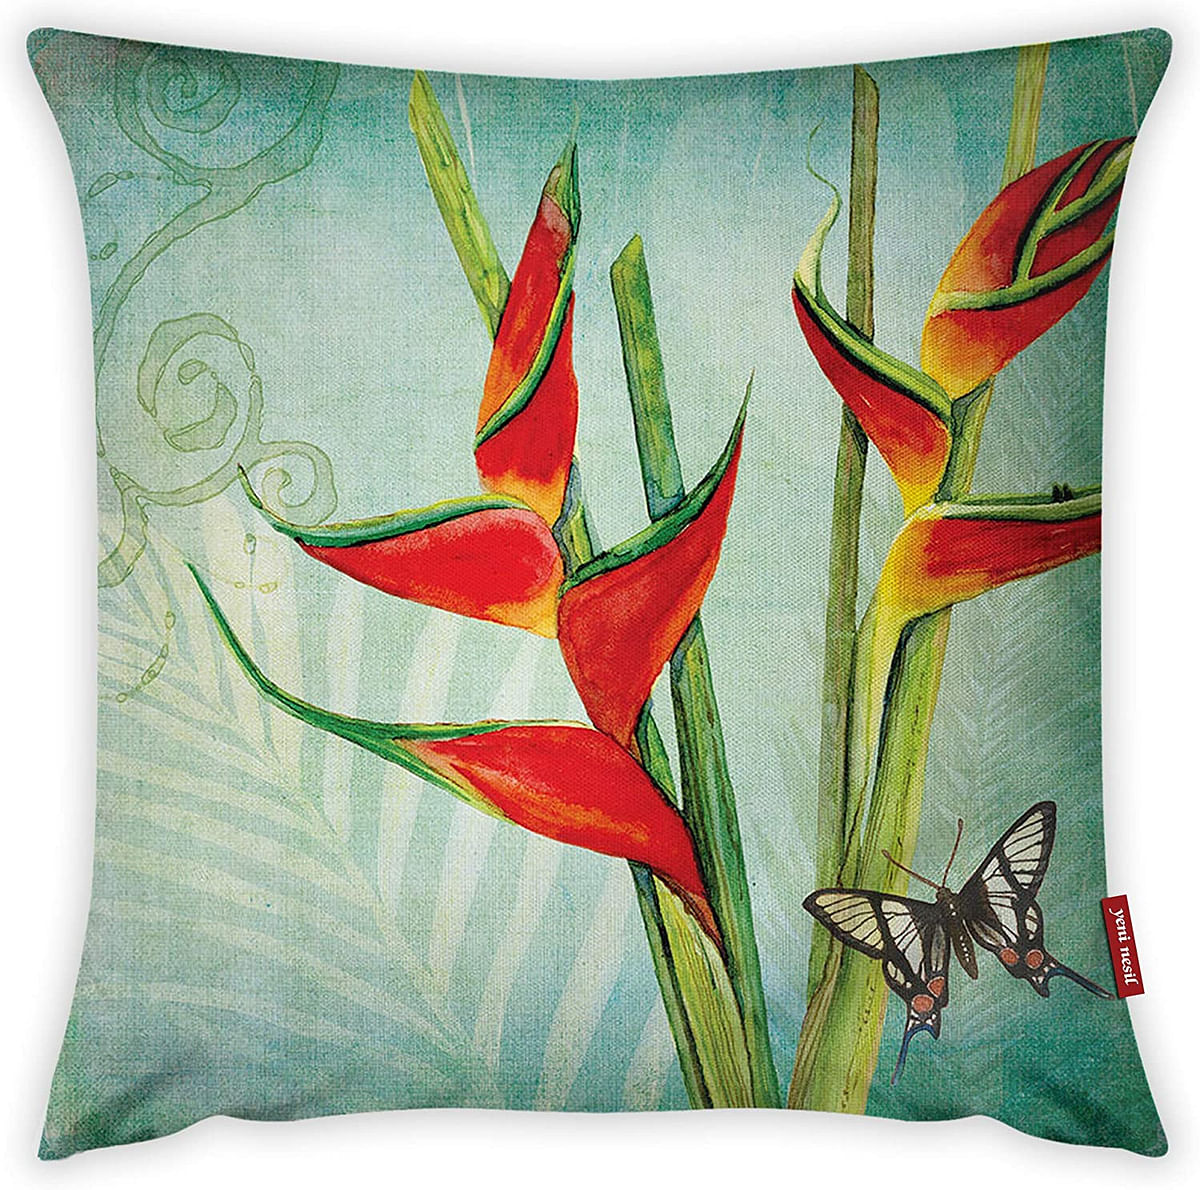 Mon Desire Decorative Throw Pillow Cover, Multi-Colour, 44 x 44 cm, MDSYST4657